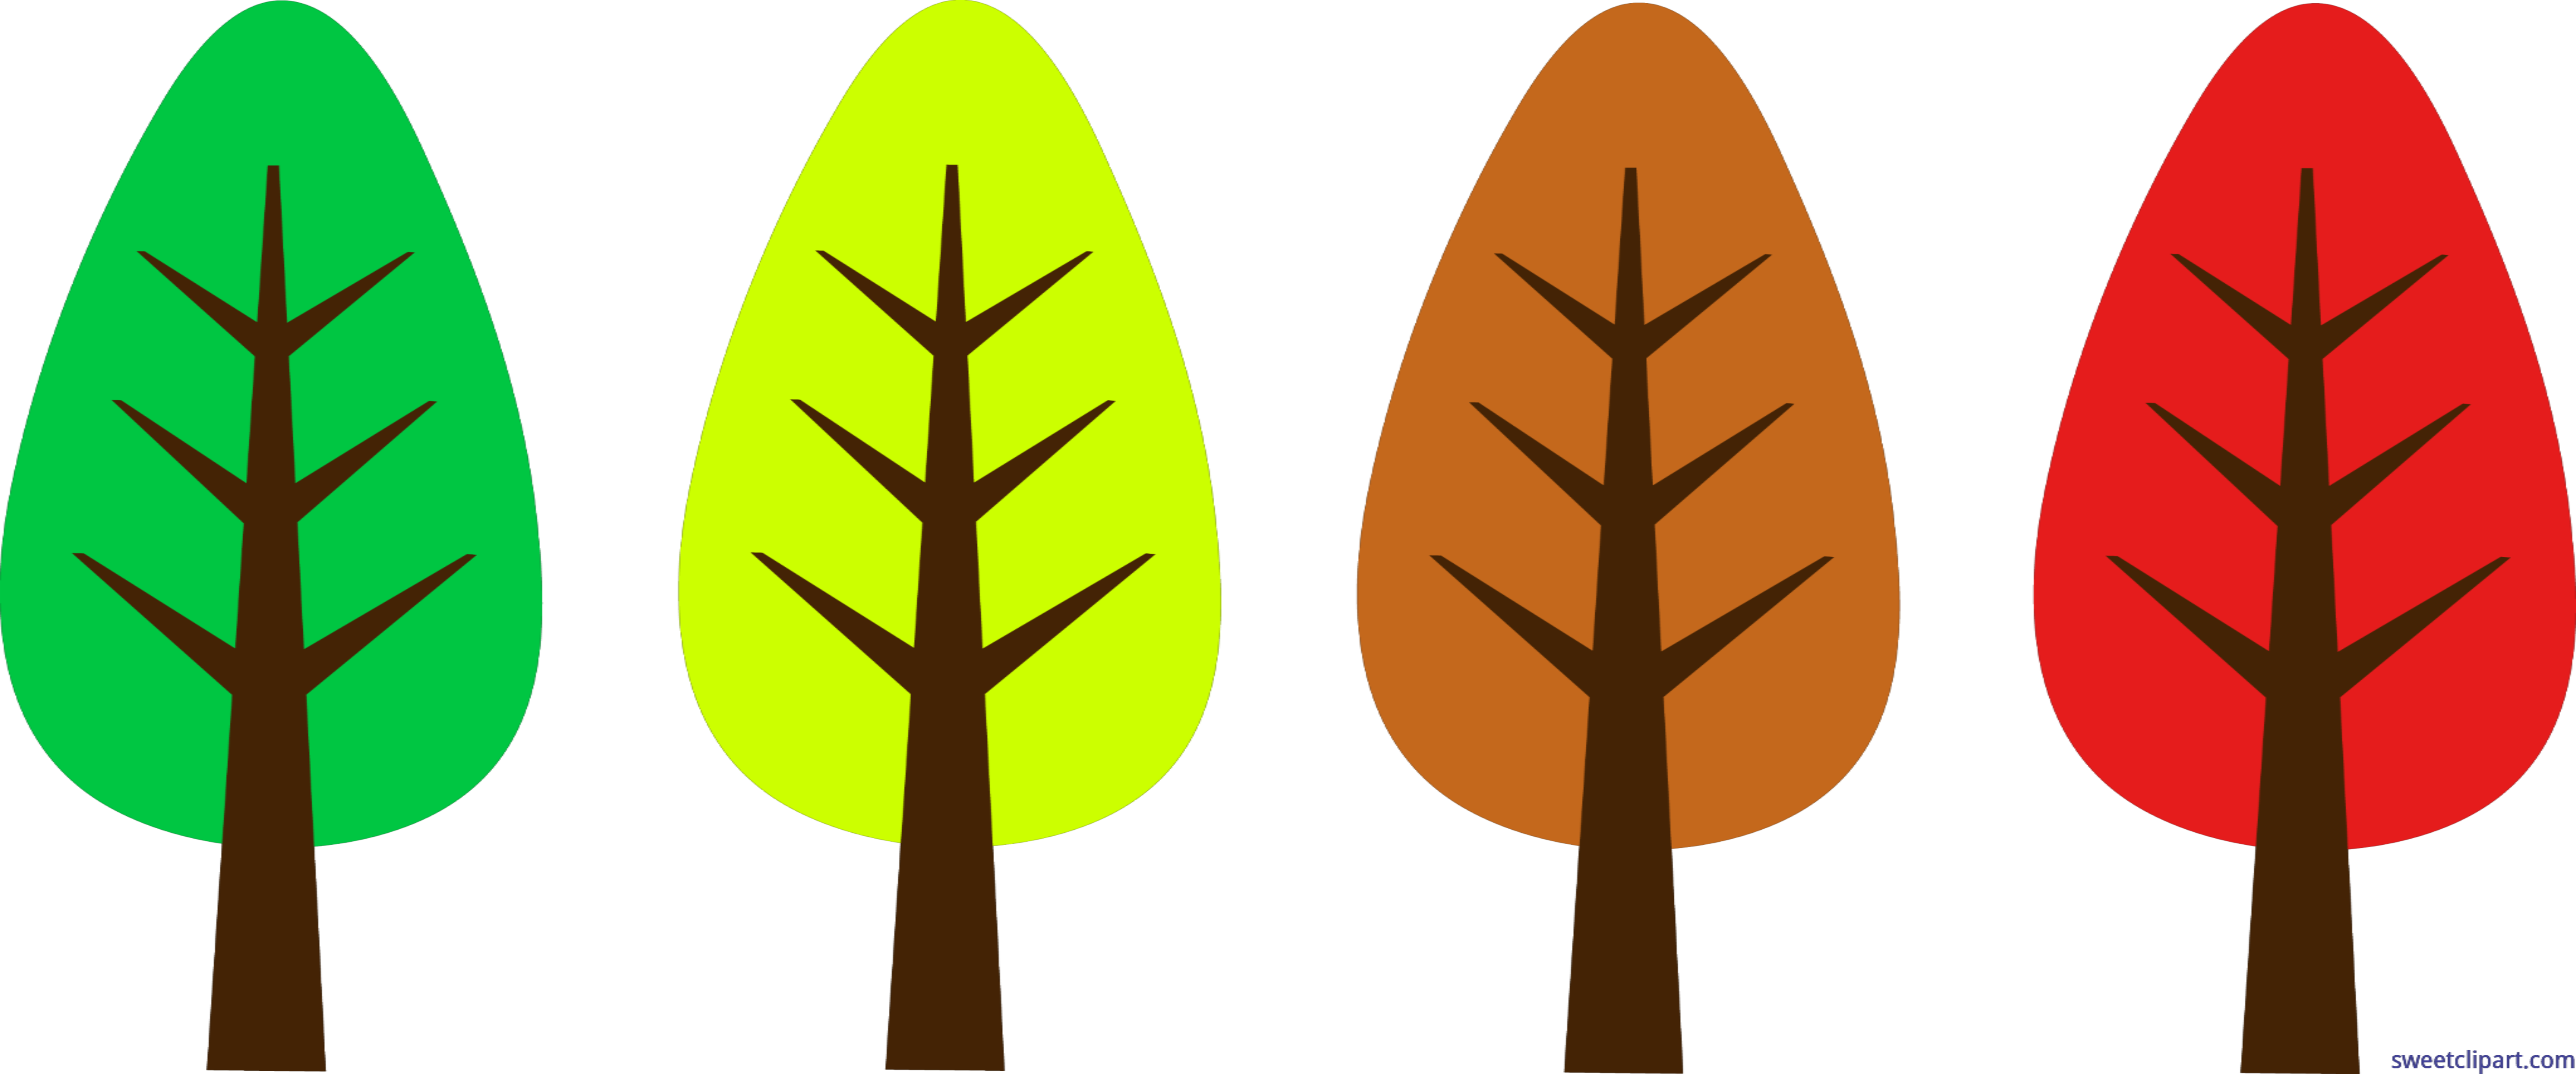 Tree simple